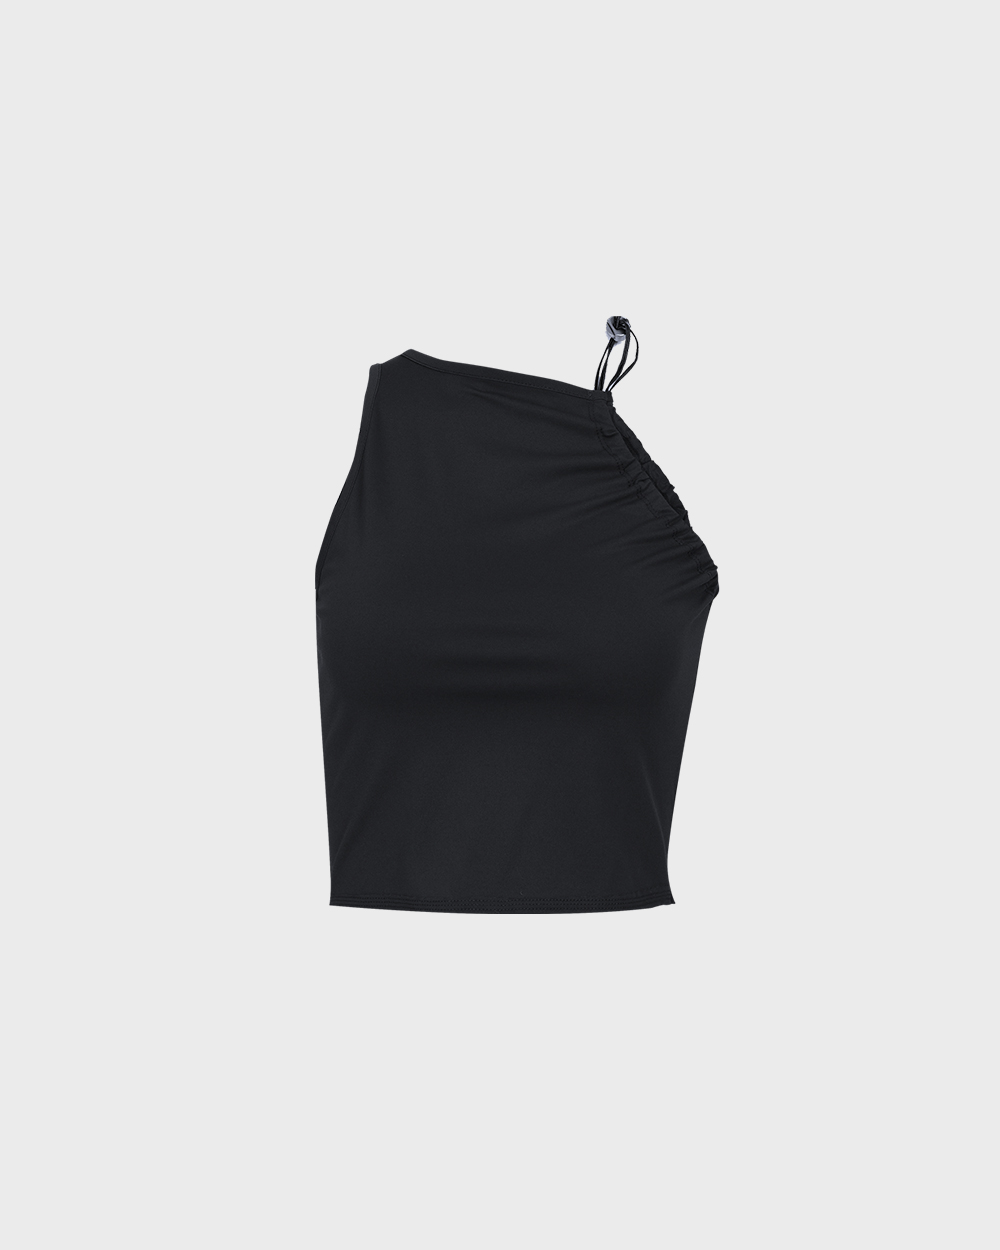 Shirring Cropped Top (Black)